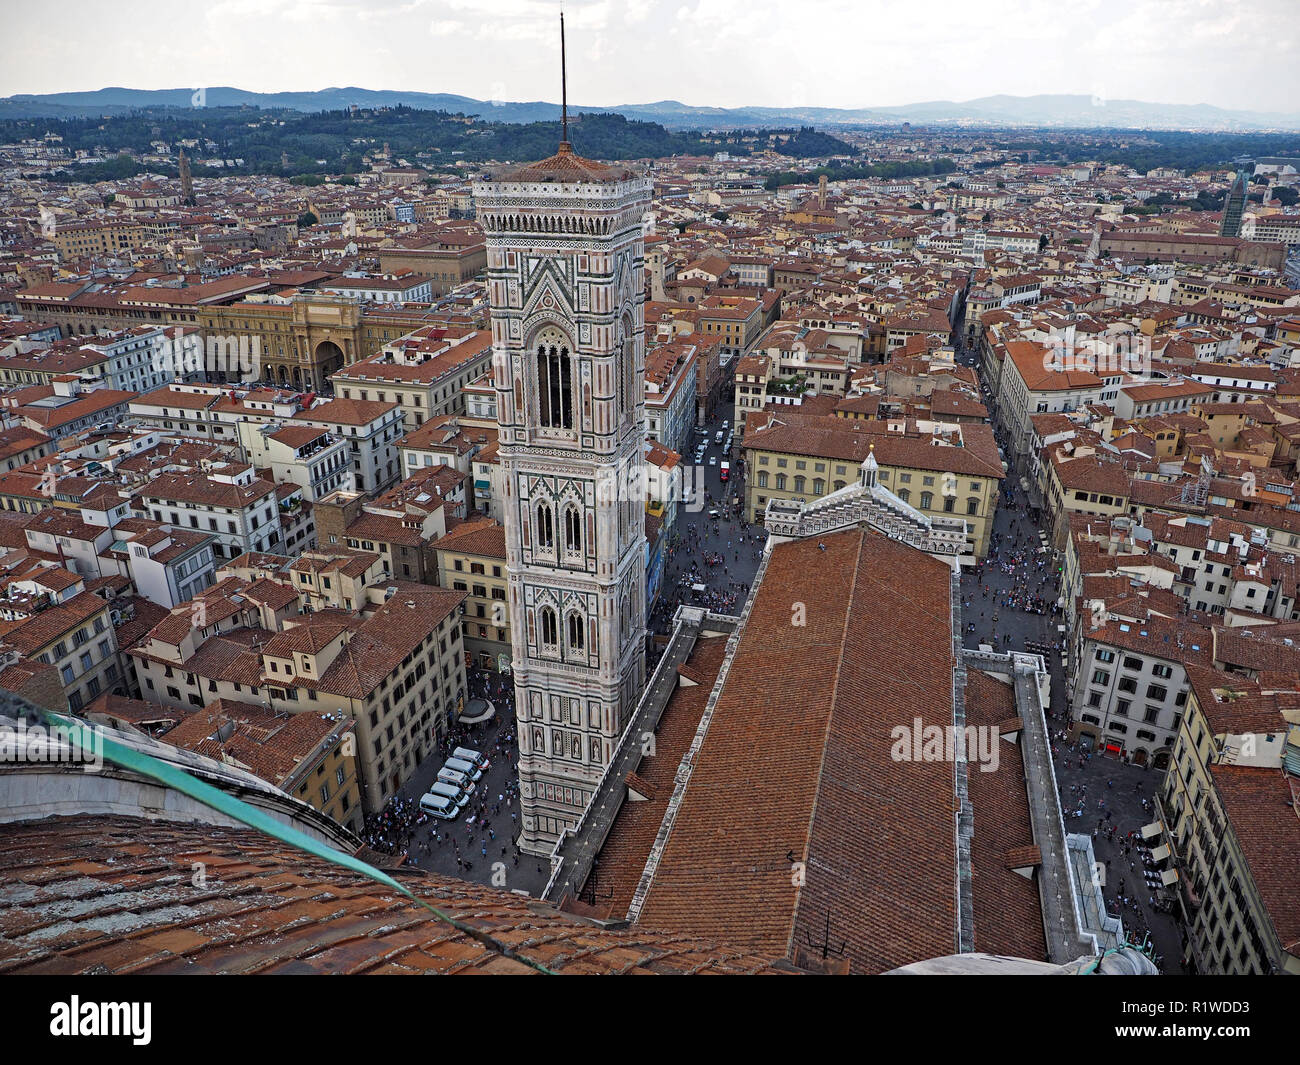 Vue d'ensemble de la lanterne sur le dôme de la cathédrale de Florence, sur le campanile de Giotto et les toits de Florence en Toscane, Italie Banque D'Images